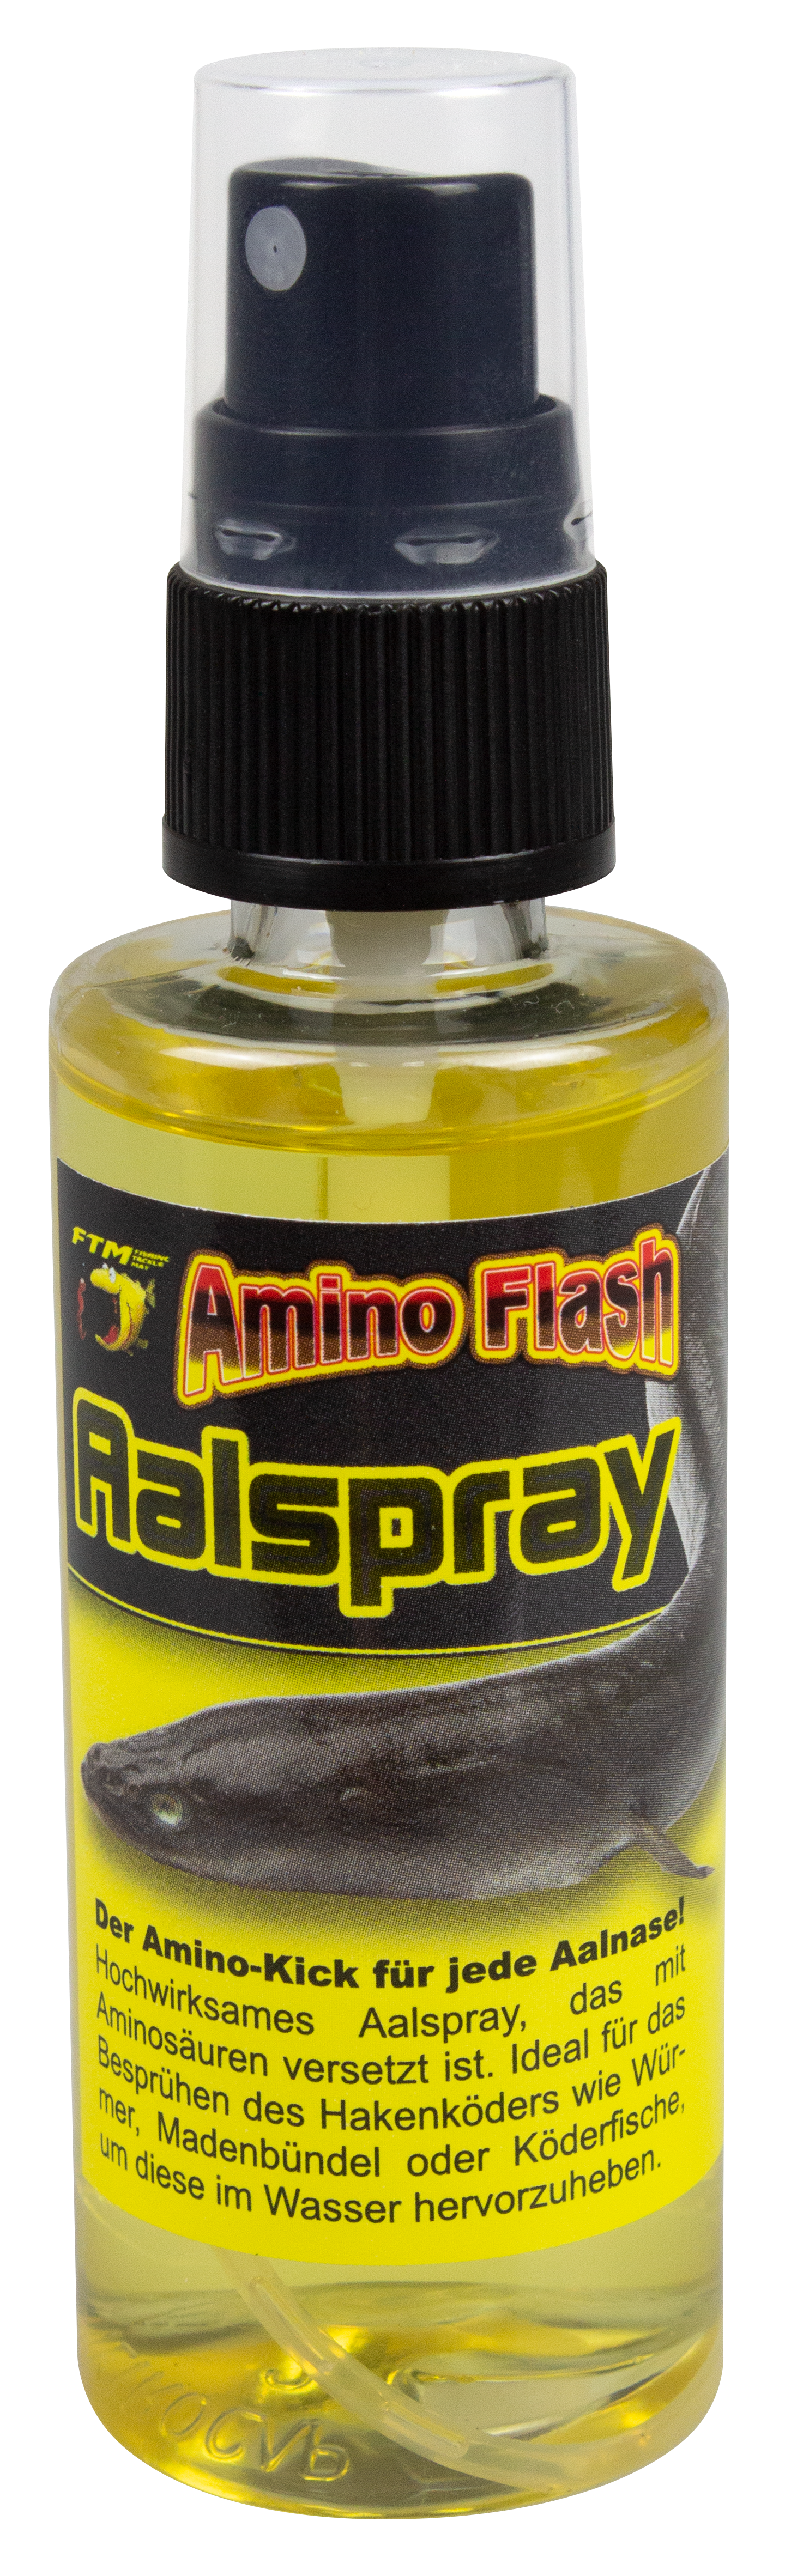 FTM Amino Flash Aalspray